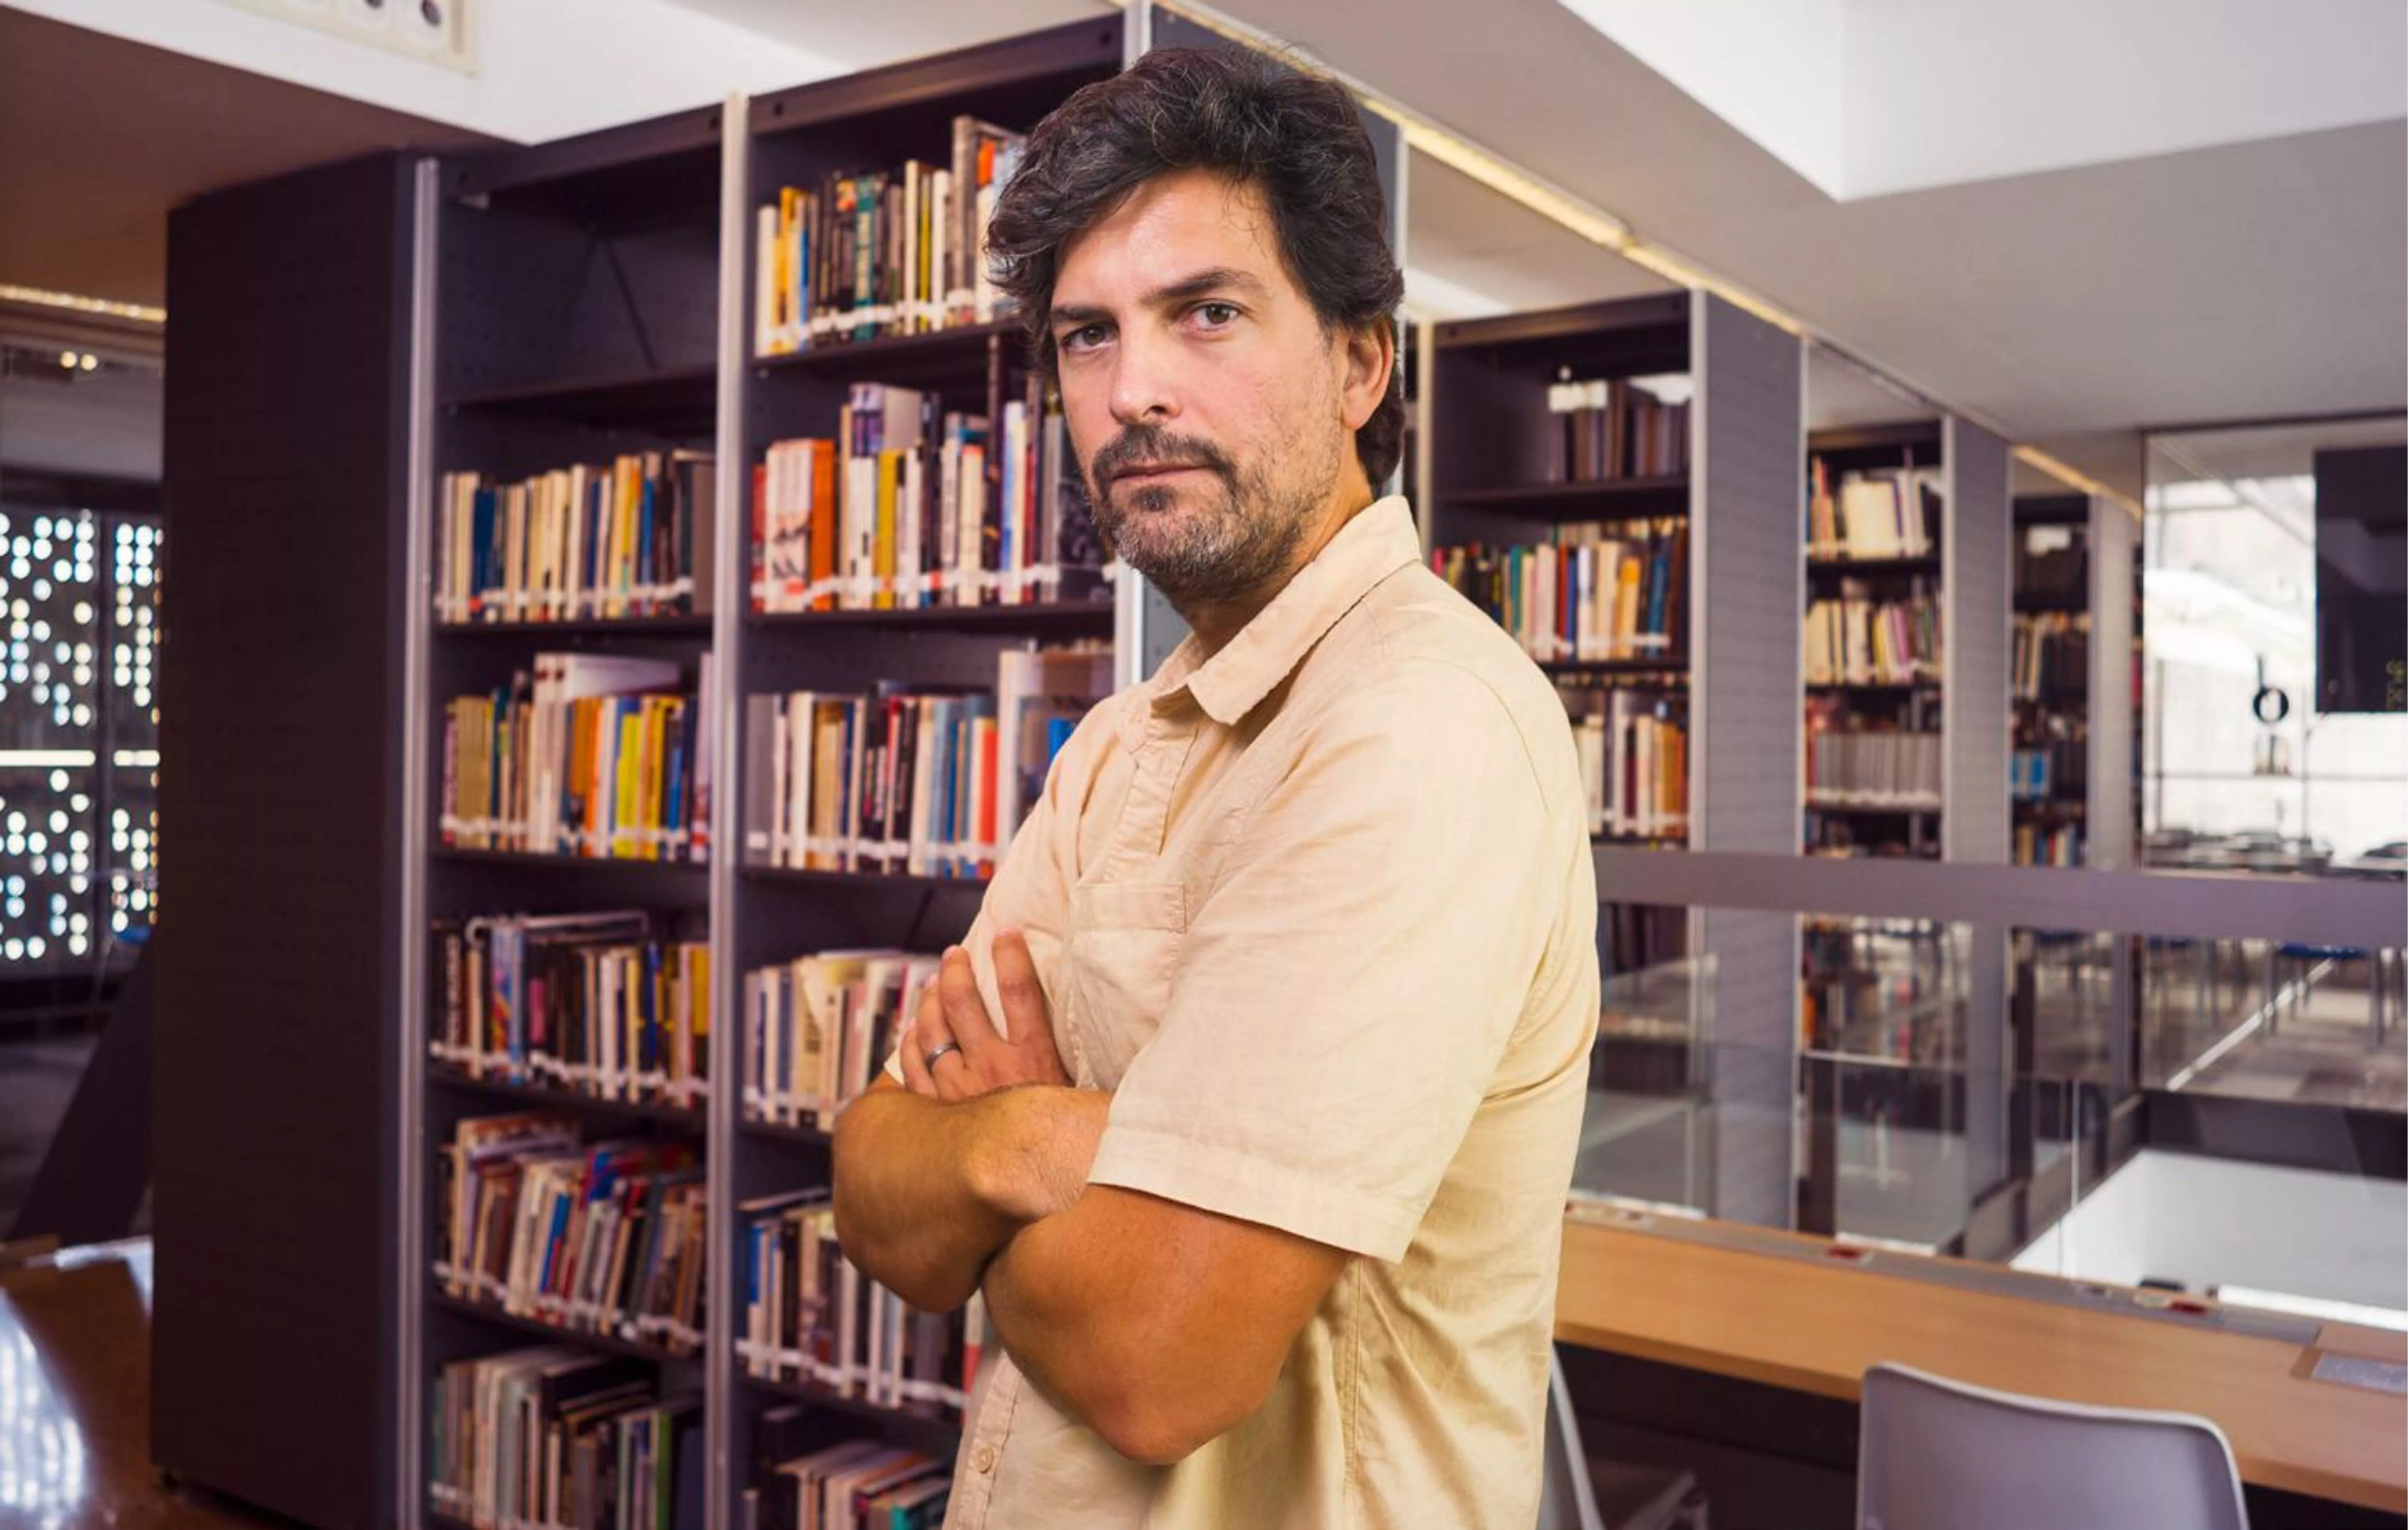 Óscar Mateos és professor de relacions internacionals a la facultat de comunicació de Blanquerna-URL i expert en Àfirca